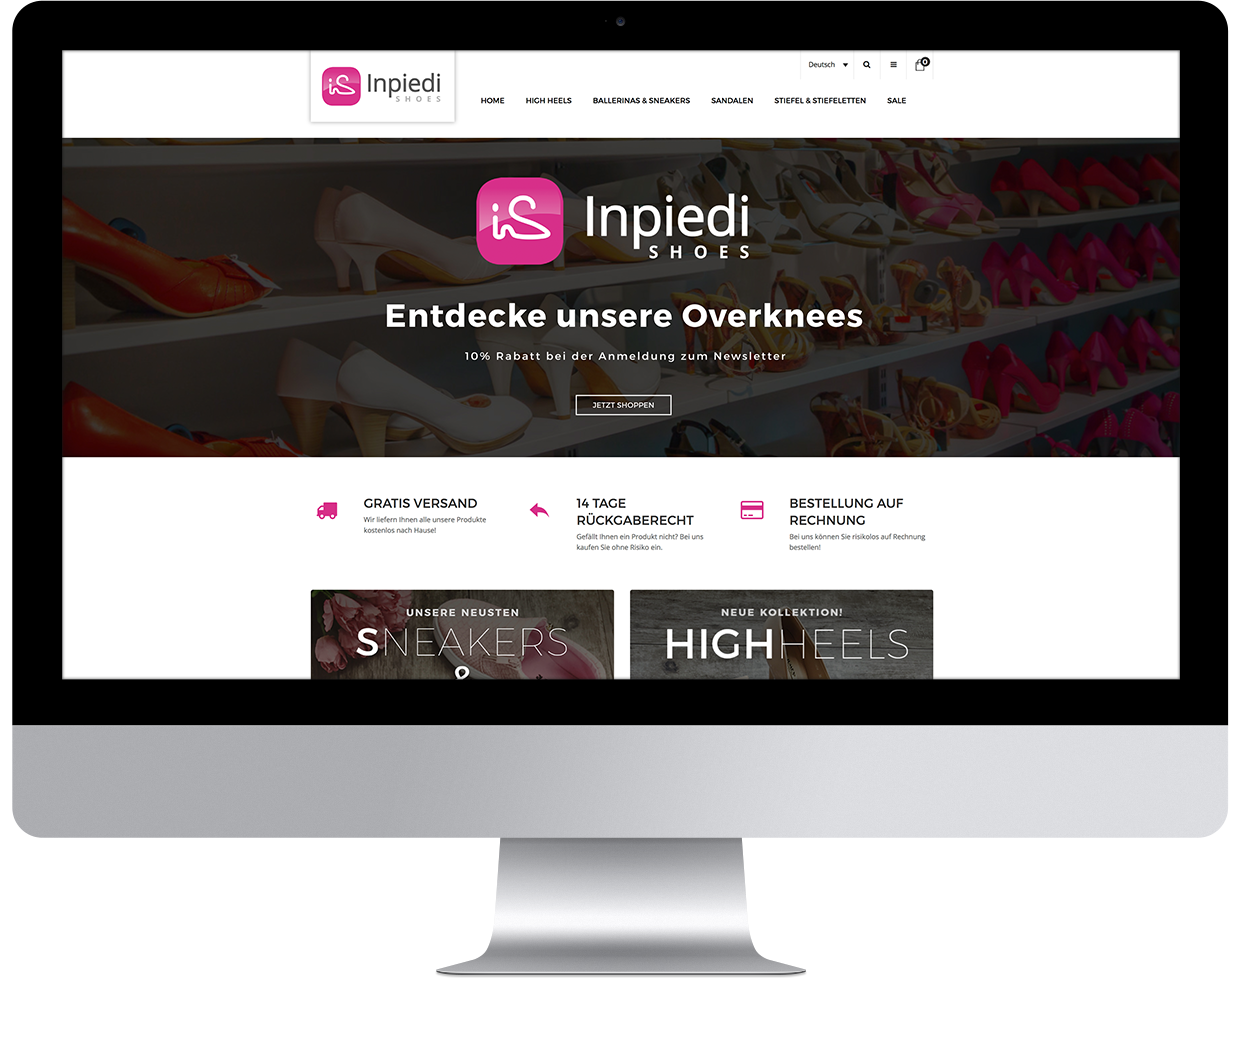 Inpiedi GmbH